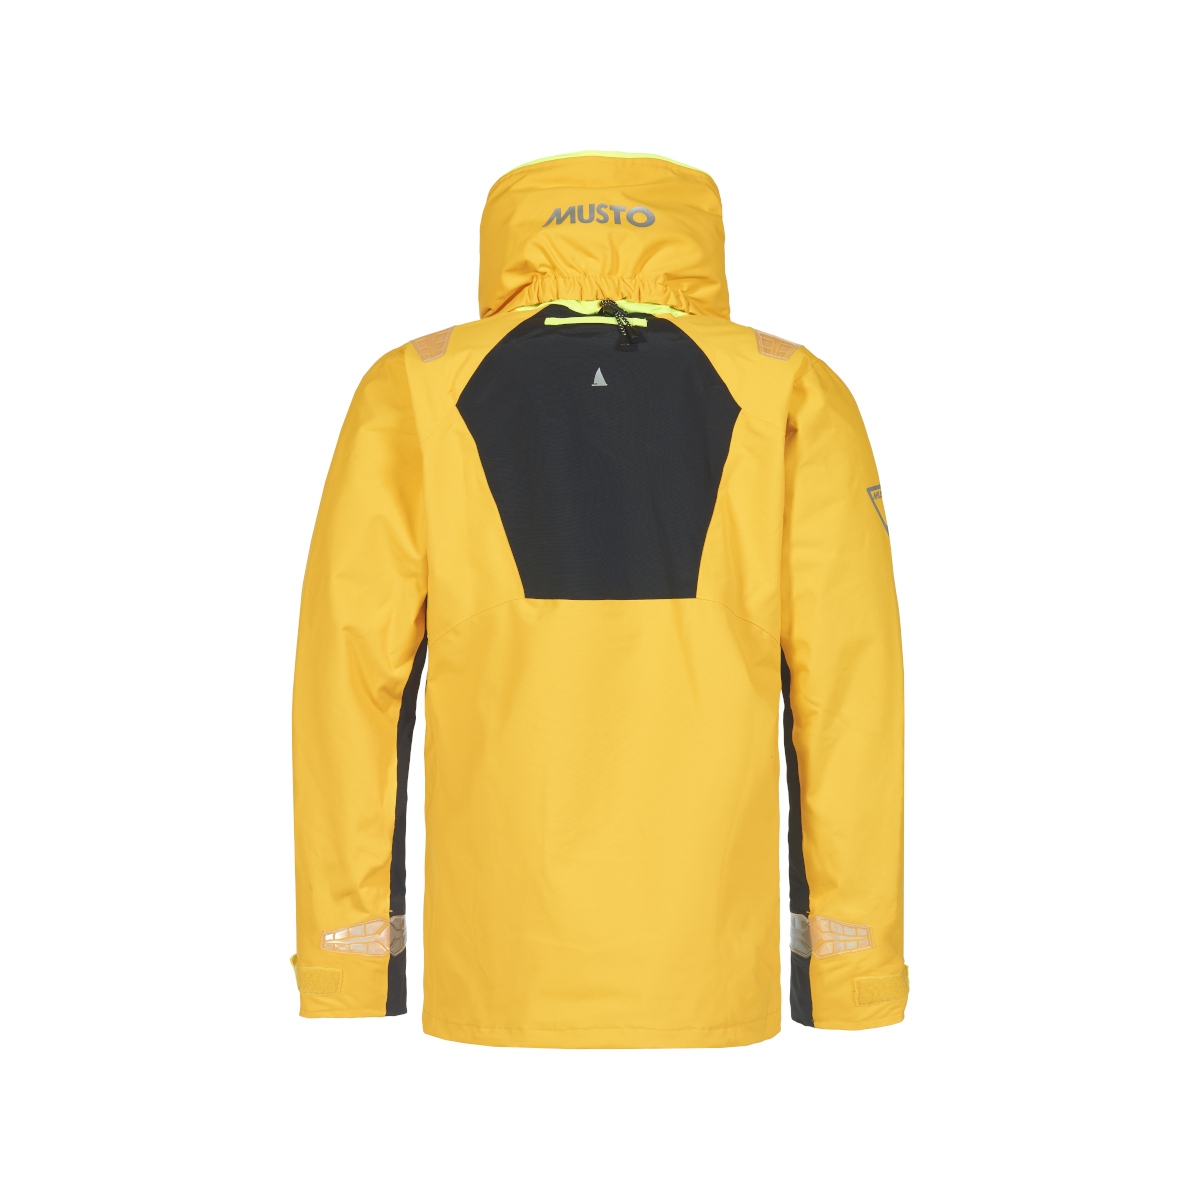 Musto BR2 veste de voile Offshore 2.0 femme jaune, taille 16